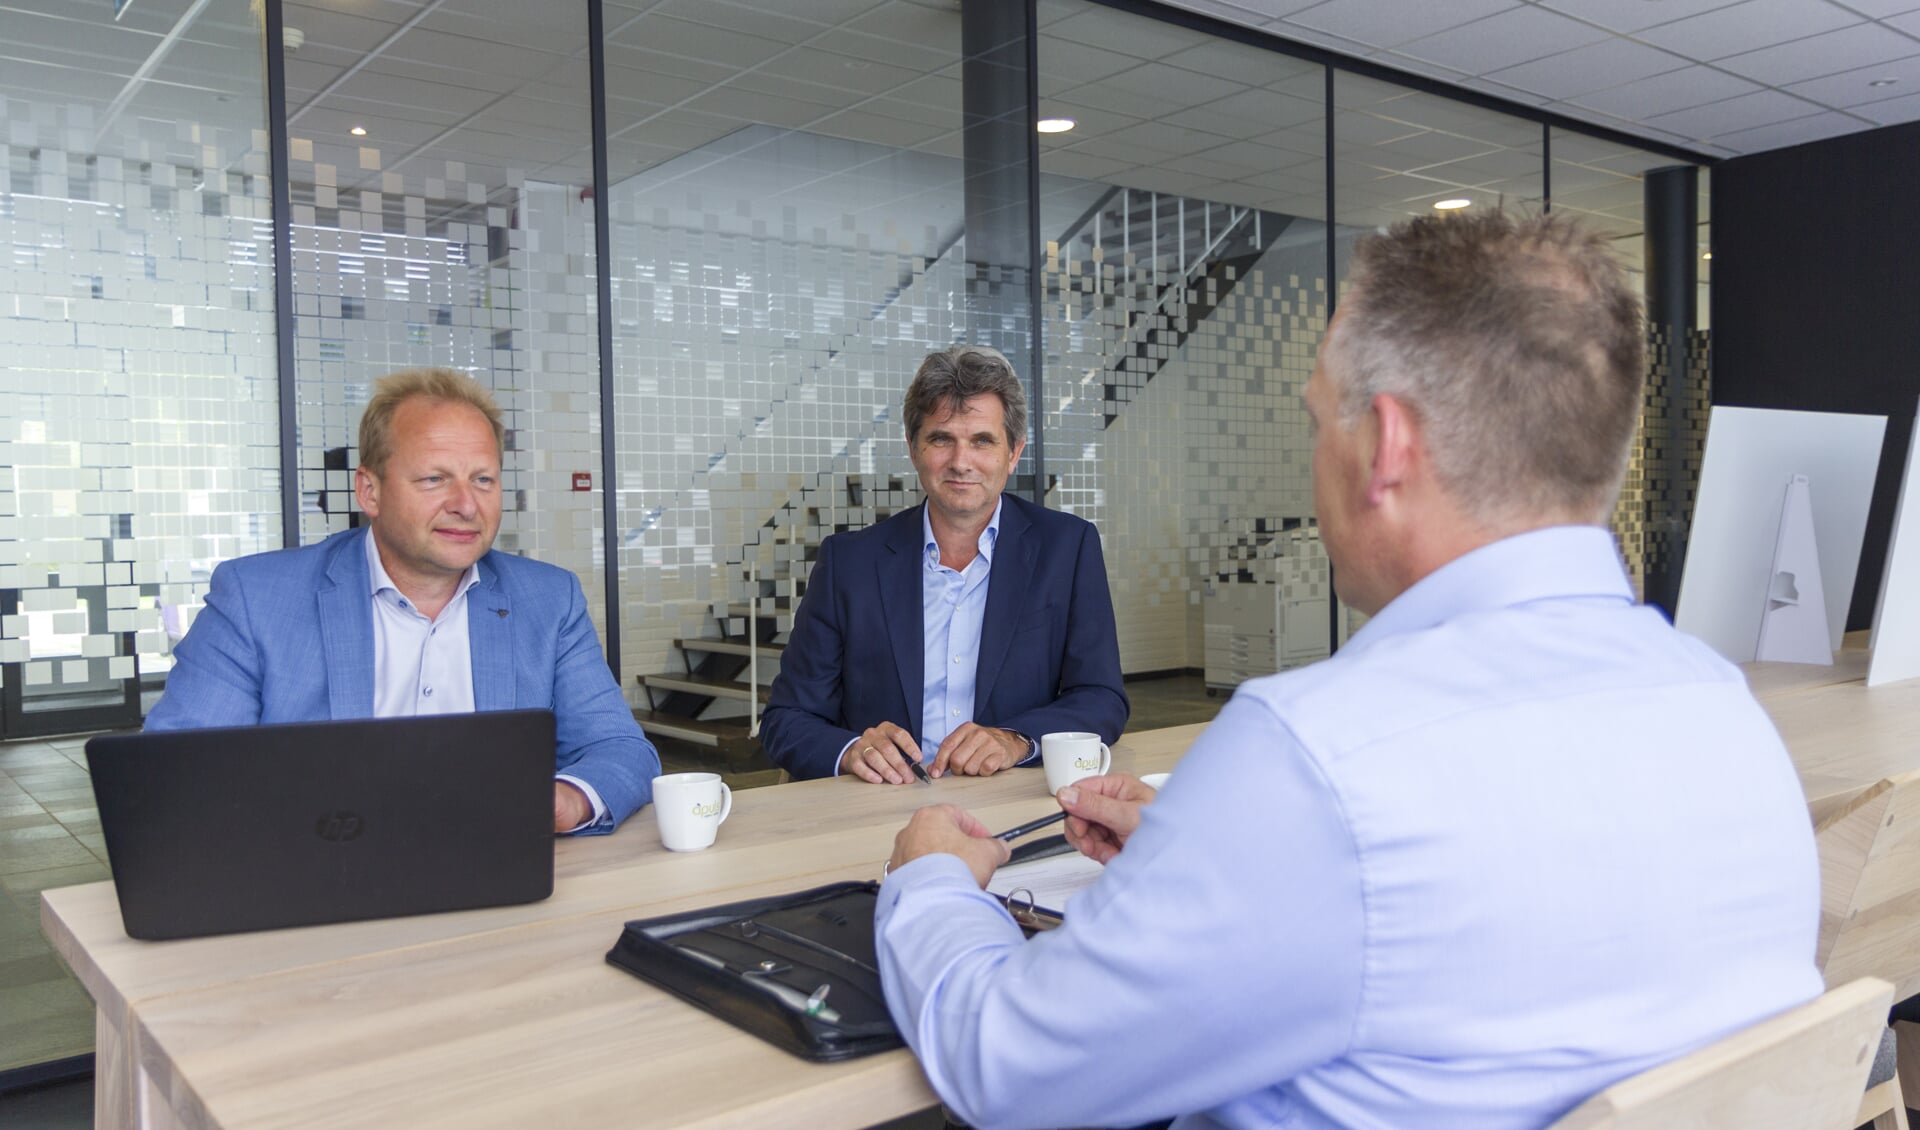 Apuls-adviseurs Jan de Vries en Jan Tabak denken mee met ondernemers die vragen hebben over hun bedrijfsvoering.